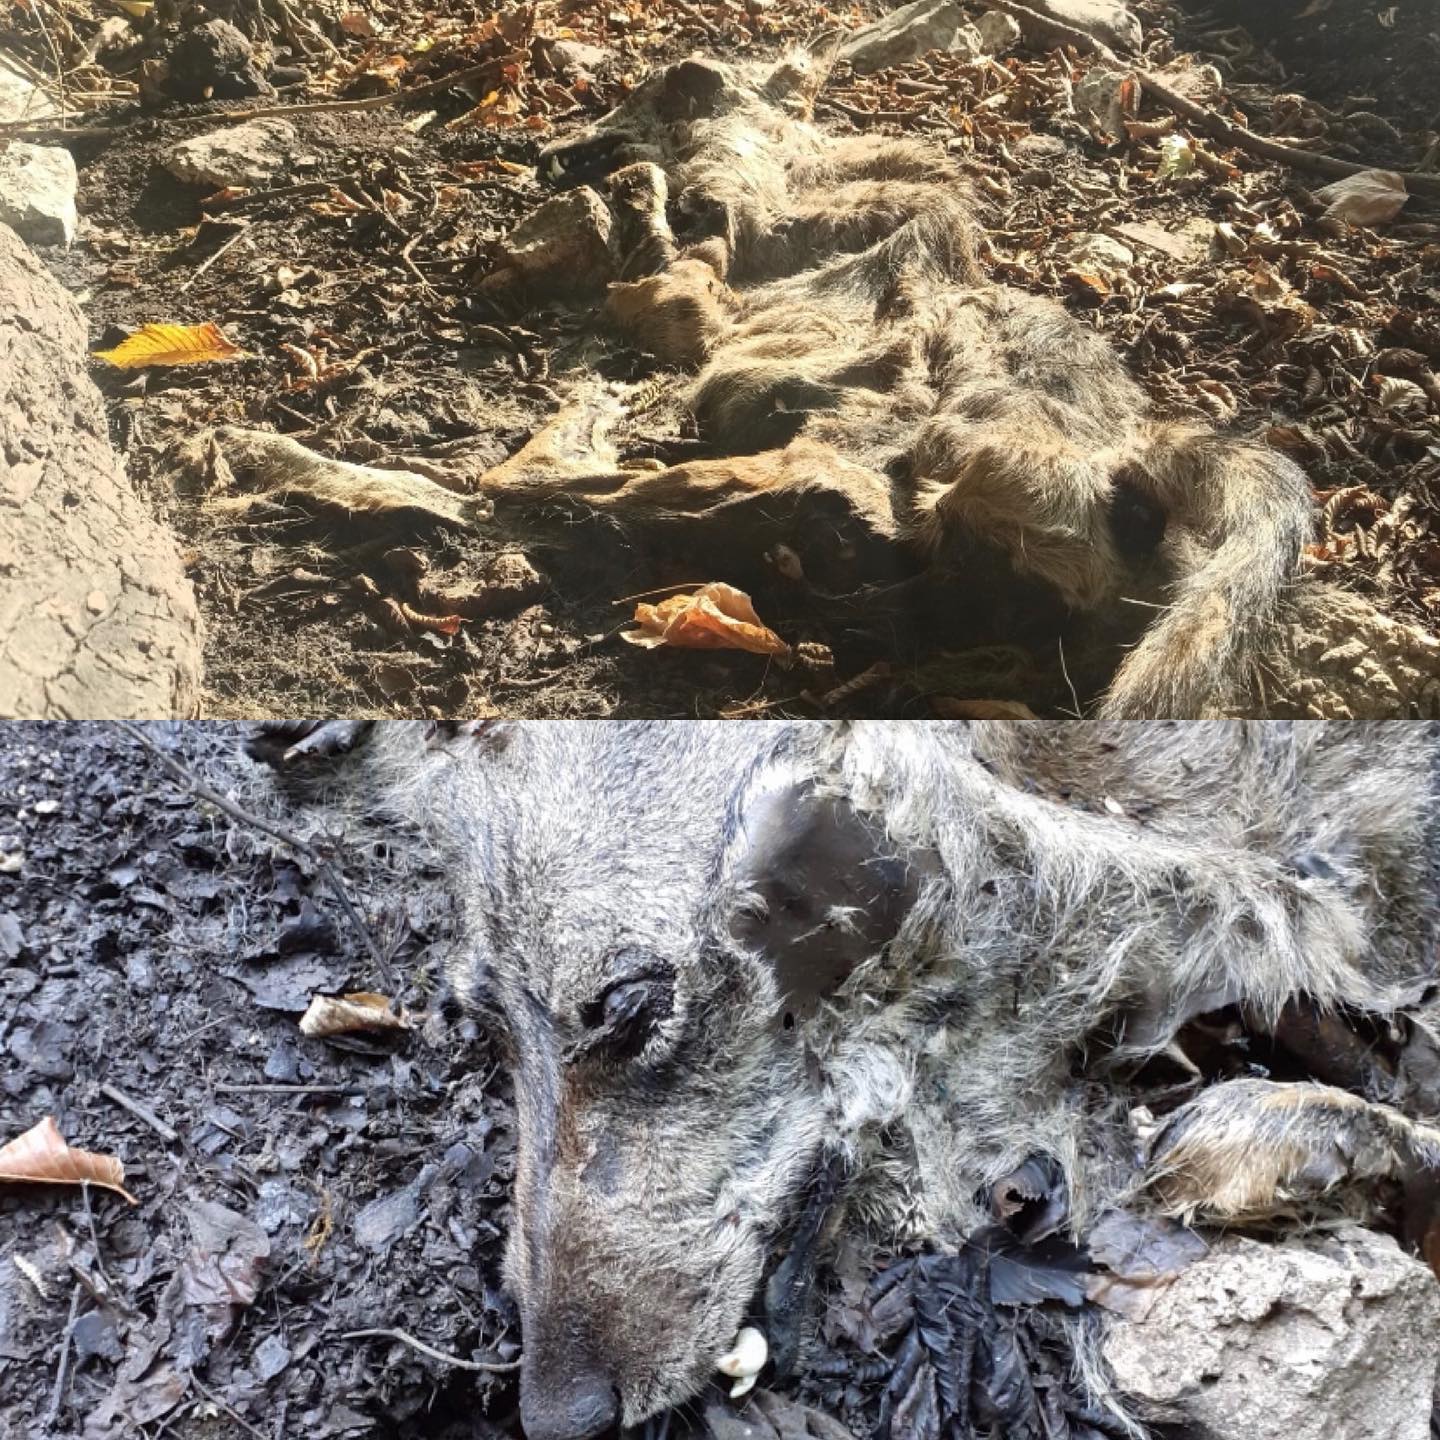 Taburno|La denuncia: lupo ‘avvelenato’ ritrovato senza vita